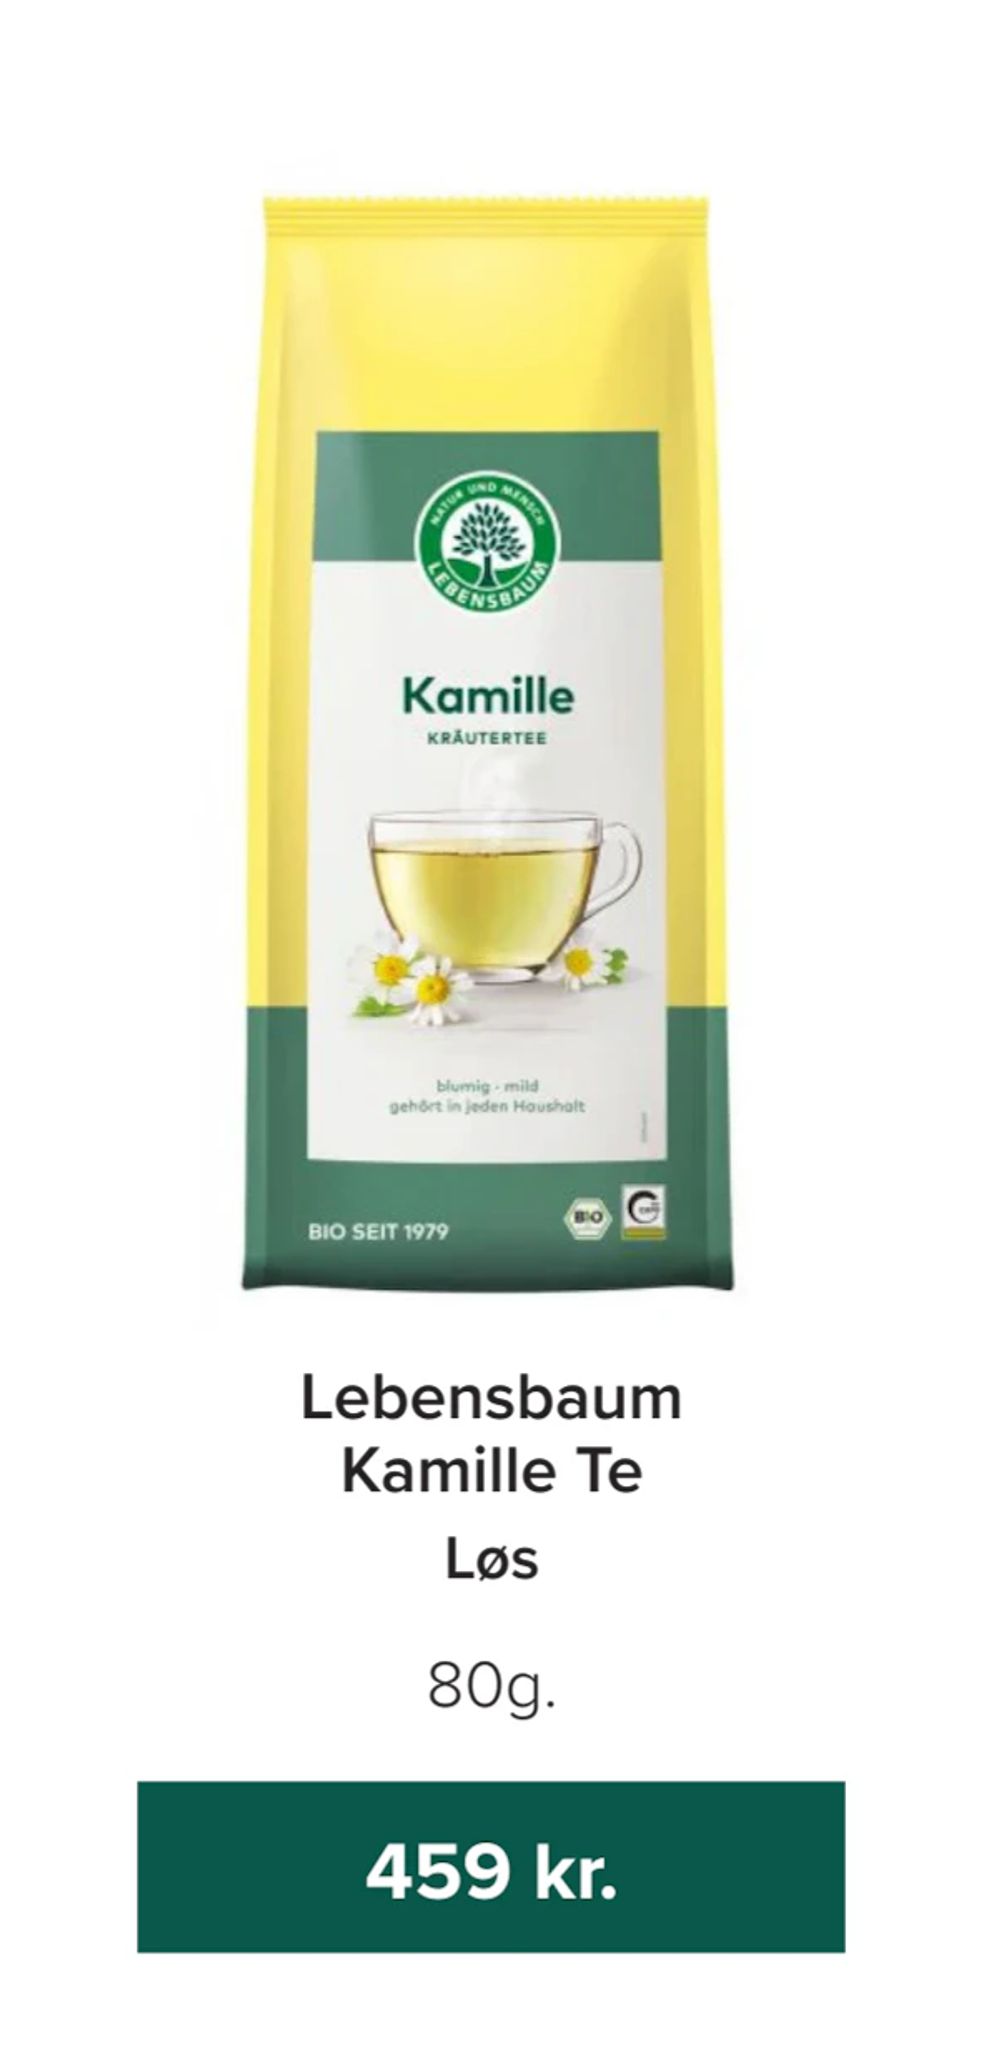 Tilbud på Lebensbaum Kamille Te fra Helsemin til 459 kr.